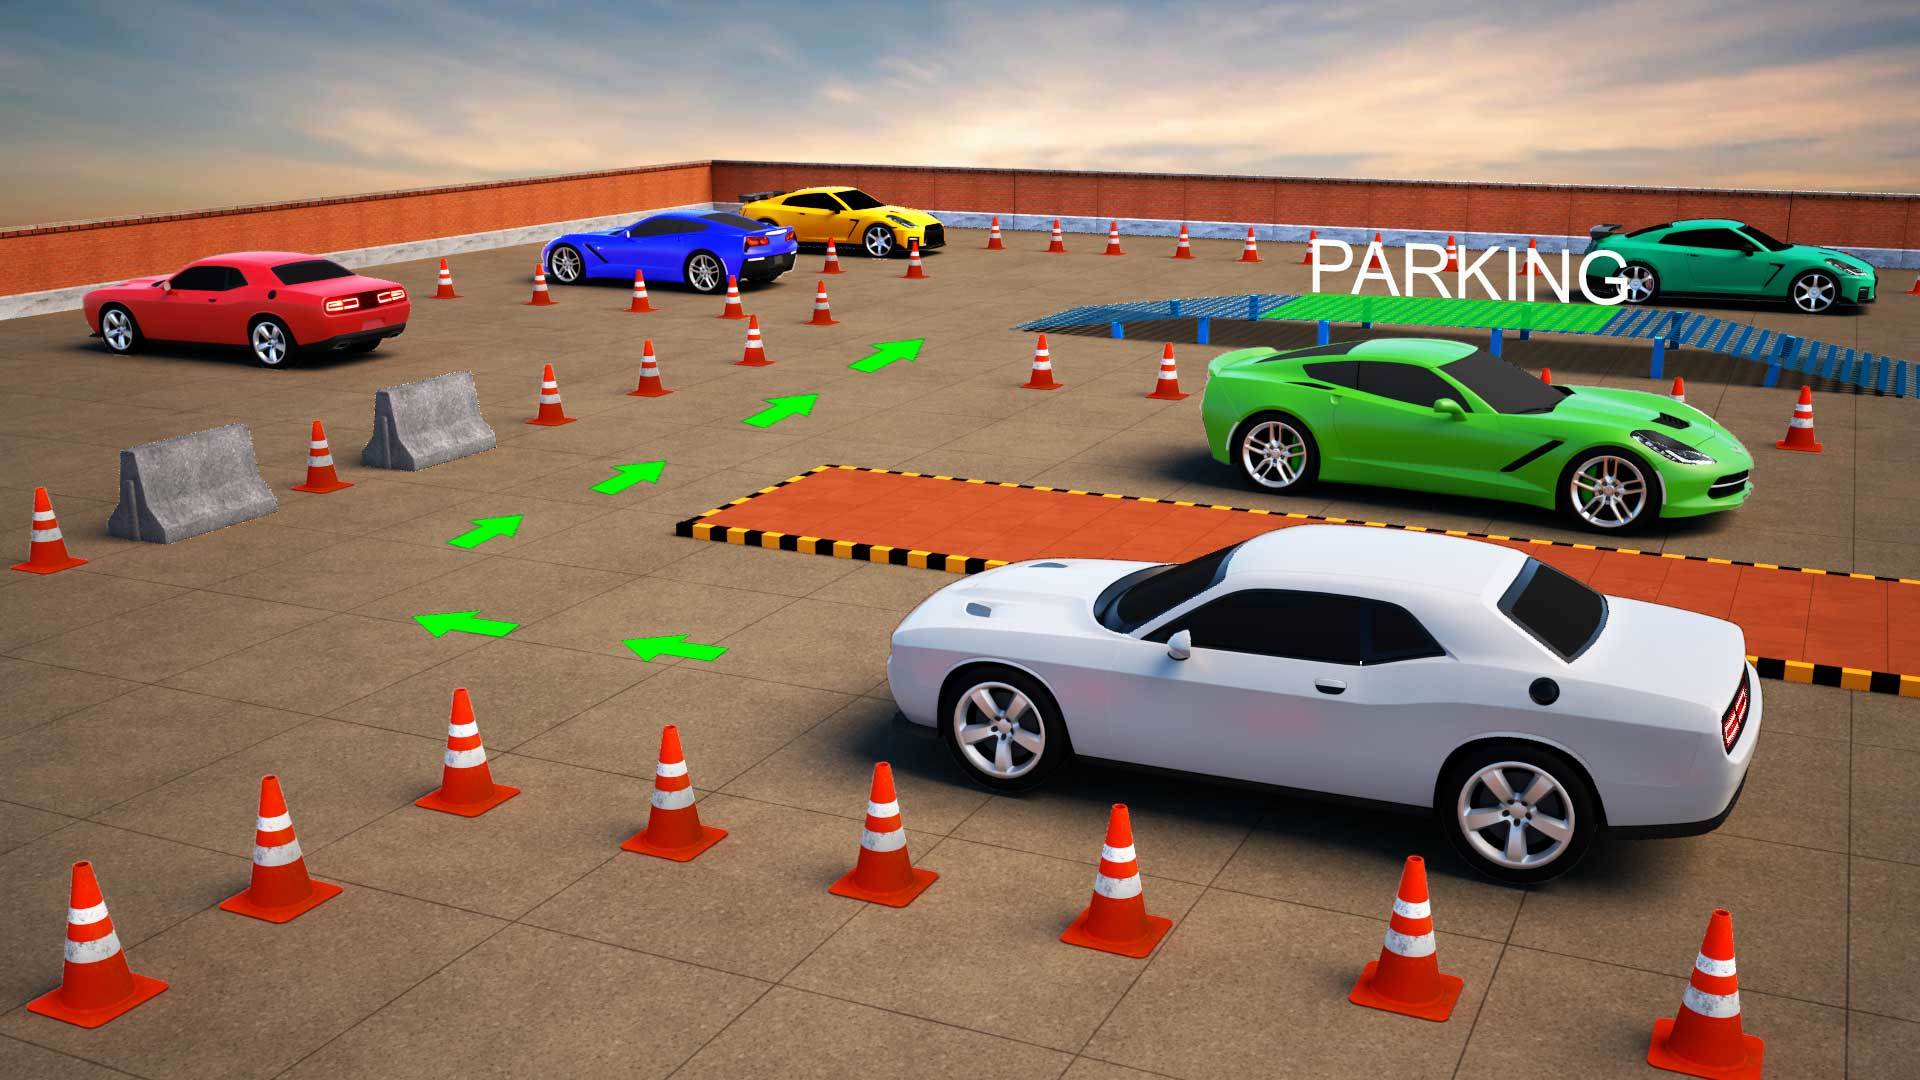 Velocidade de condução 3d jogo de corrida de carro offline::Appstore  for Android